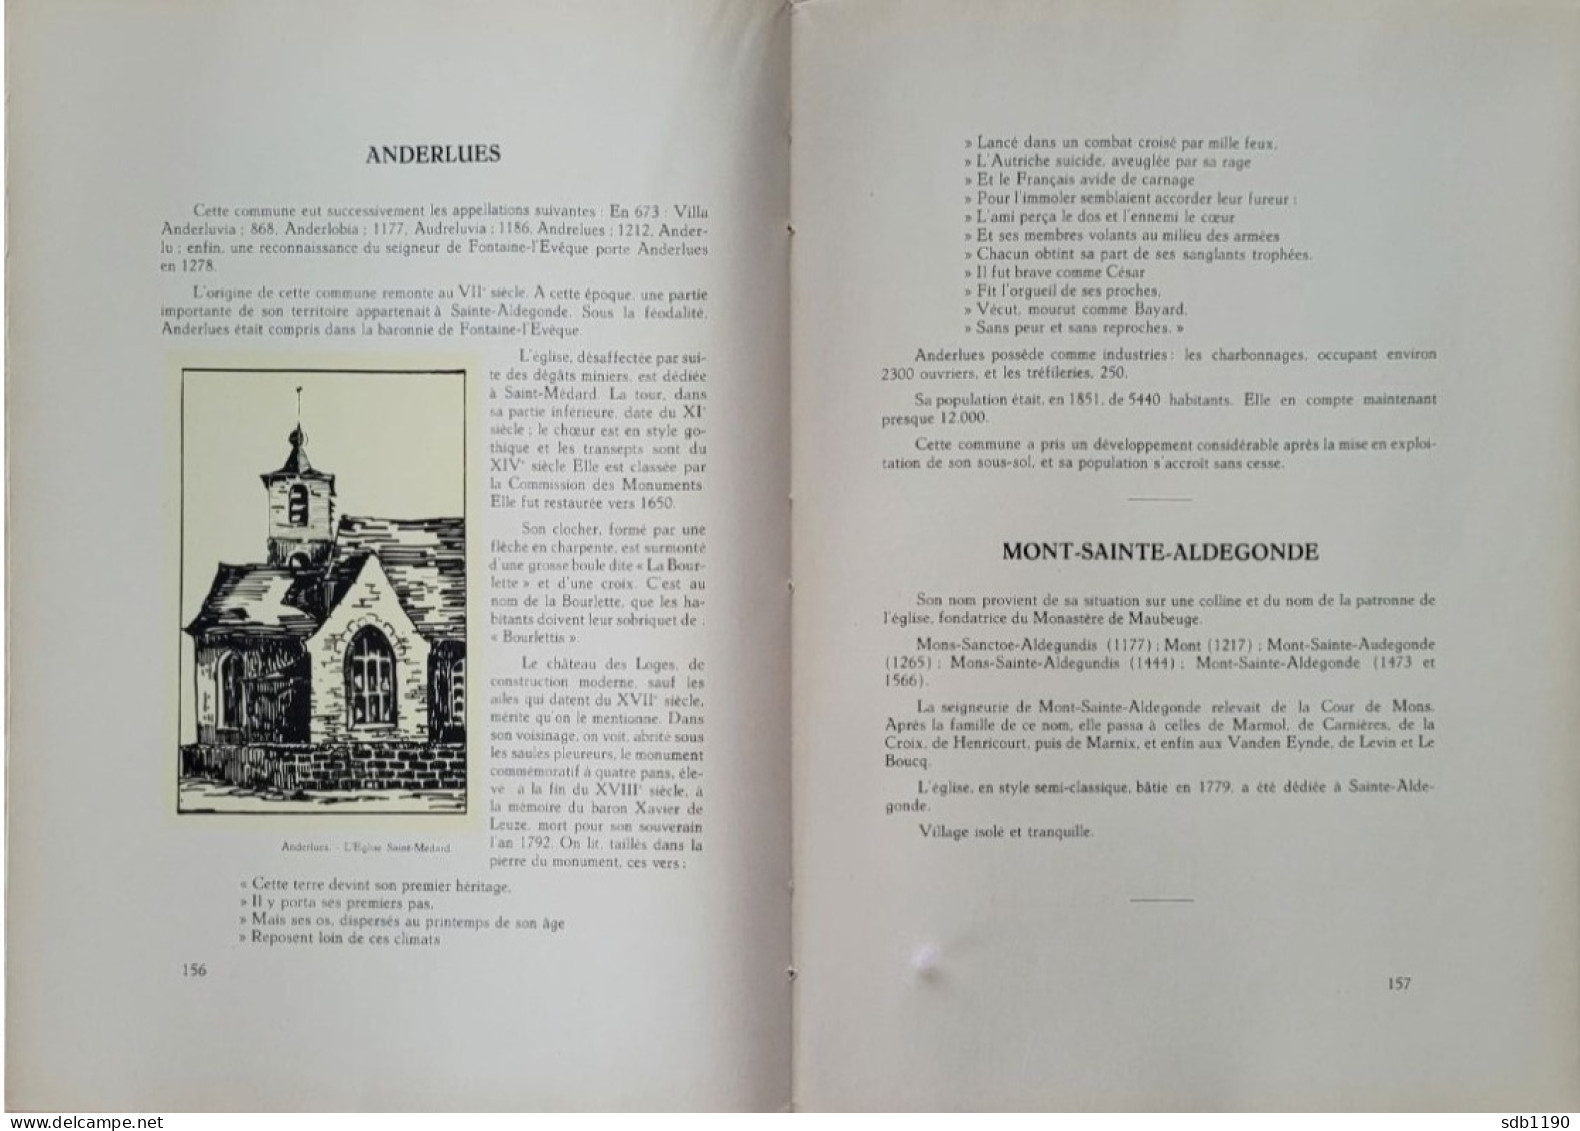 Livre 'Le Centre archéologique, folklorique, industriel, commercial, artistique, scolaire' 1930 avec 317 illustrations